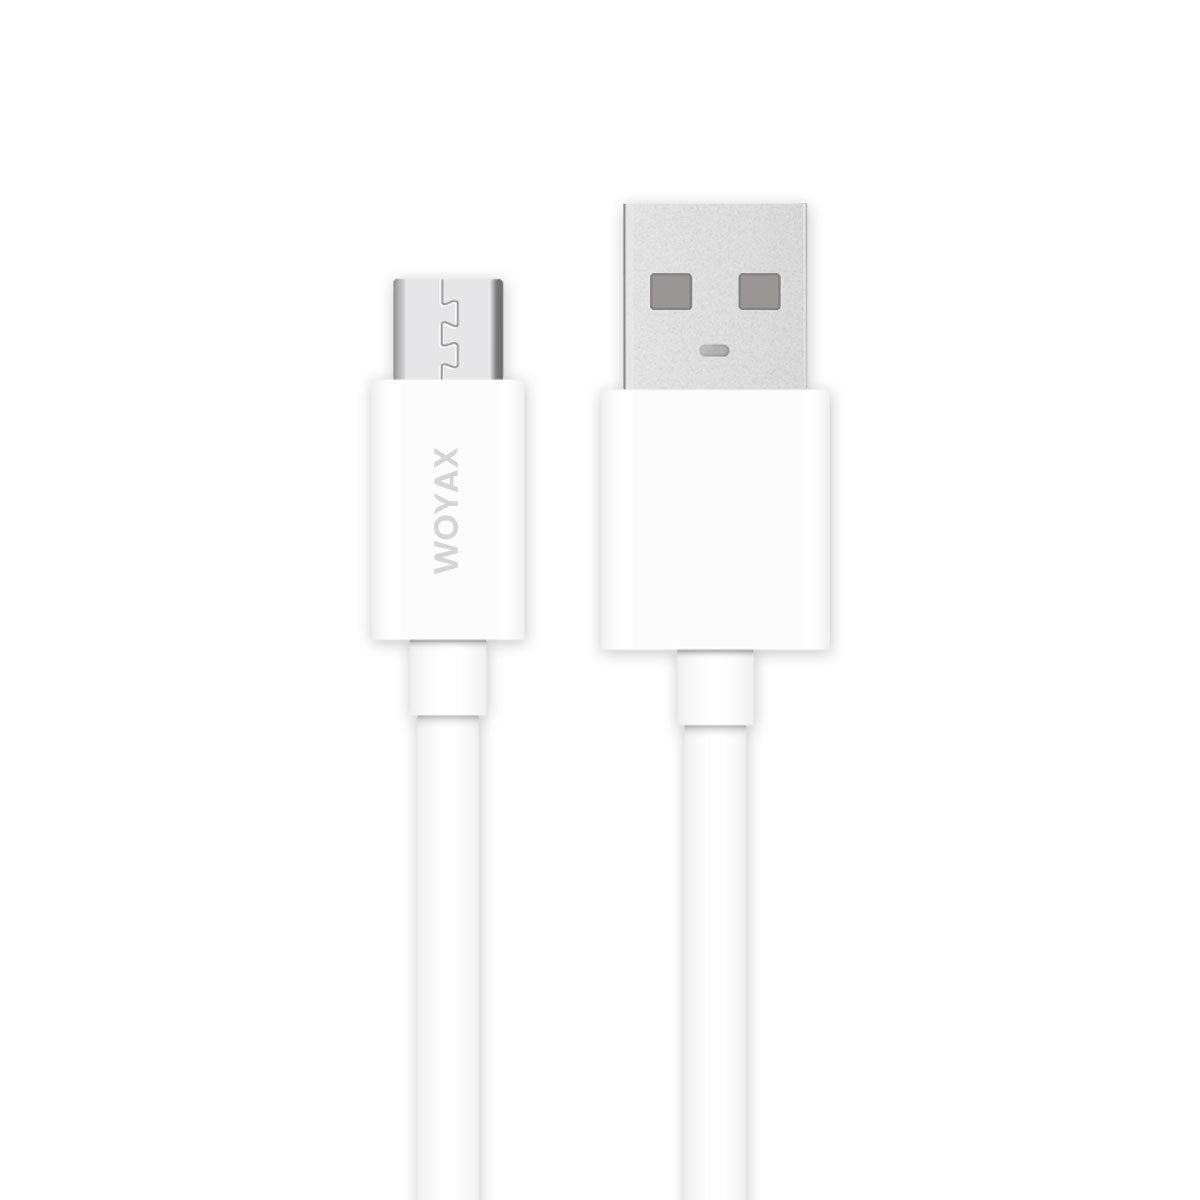 Woyax 1.2 m Micro USB Kabel, Ladekabel für Samsung, Nexus, LG, Android Smartphones